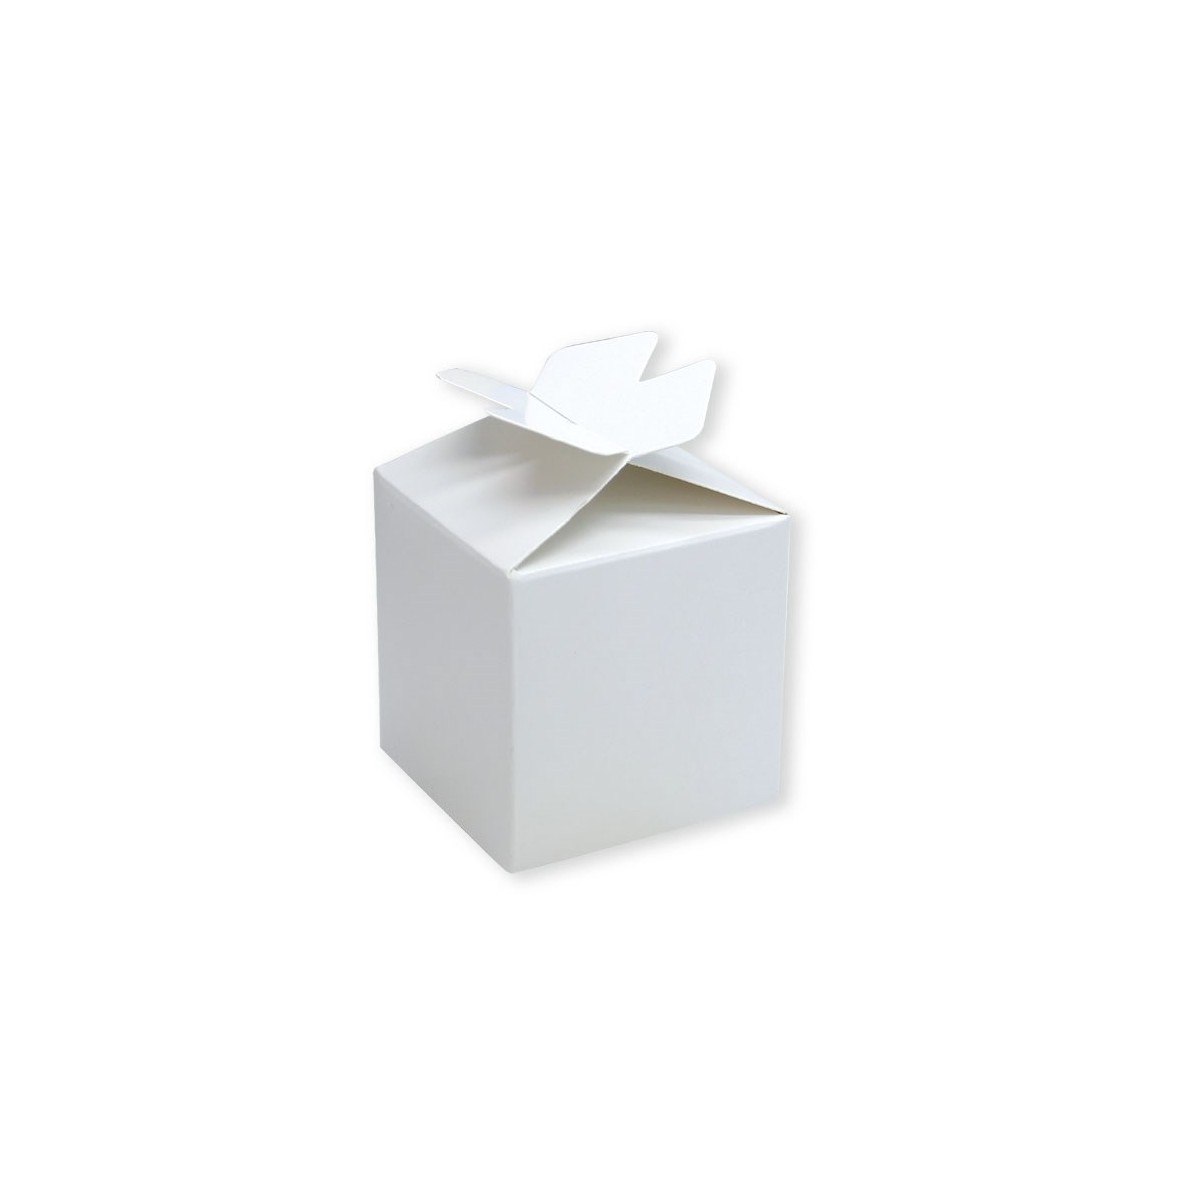 Scatoline cubo con fiocco in carta bianco 25pz.